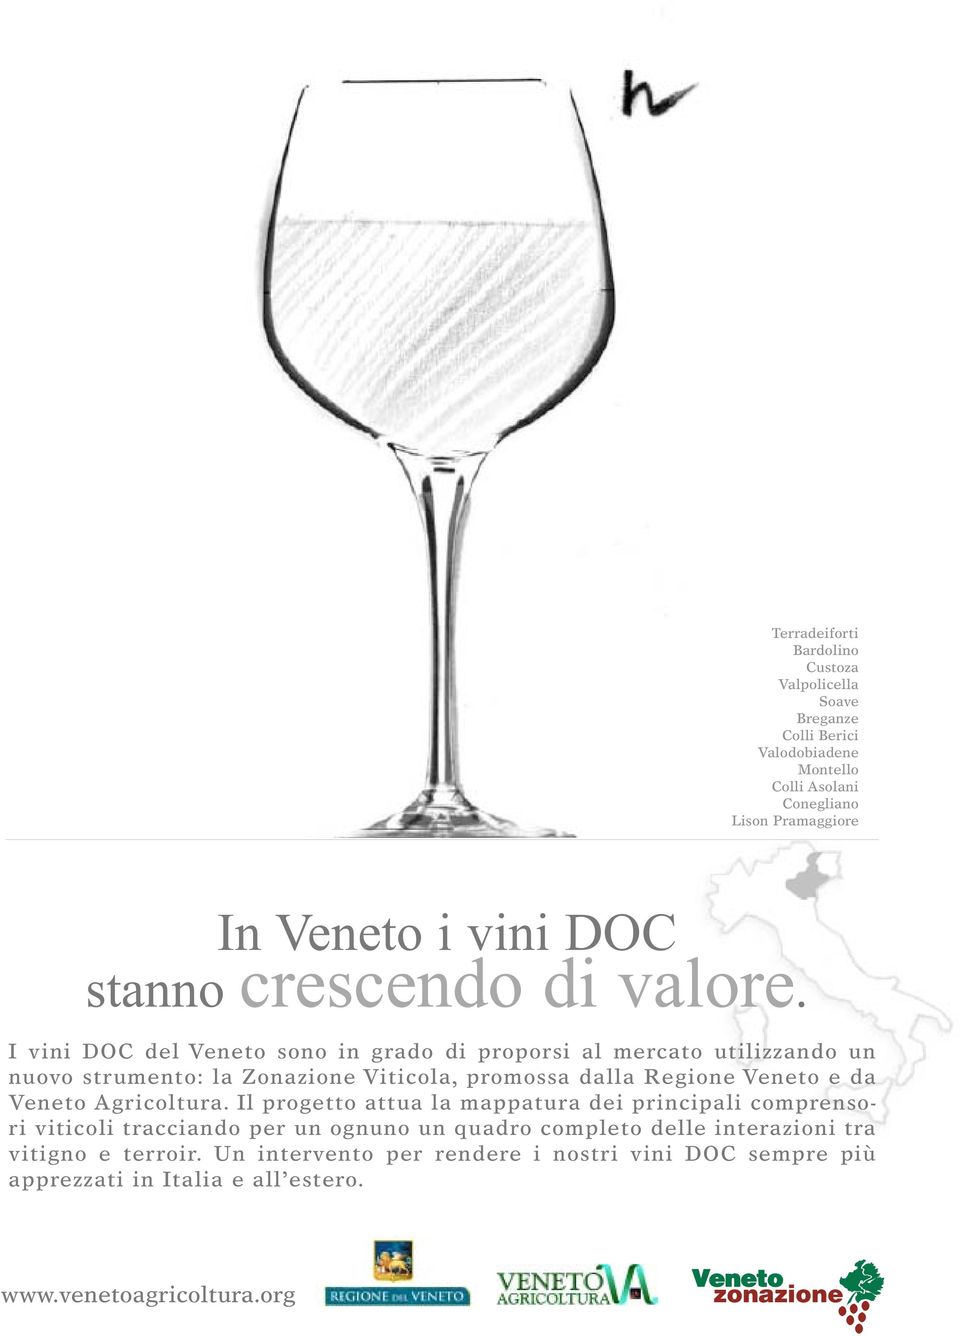 I vini DOC del Veneto sono in grado di proporsi al mercato utilizzando un nuovo strumento: la Zonazione Viticola, promossa dalla Regione Veneto e da Veneto